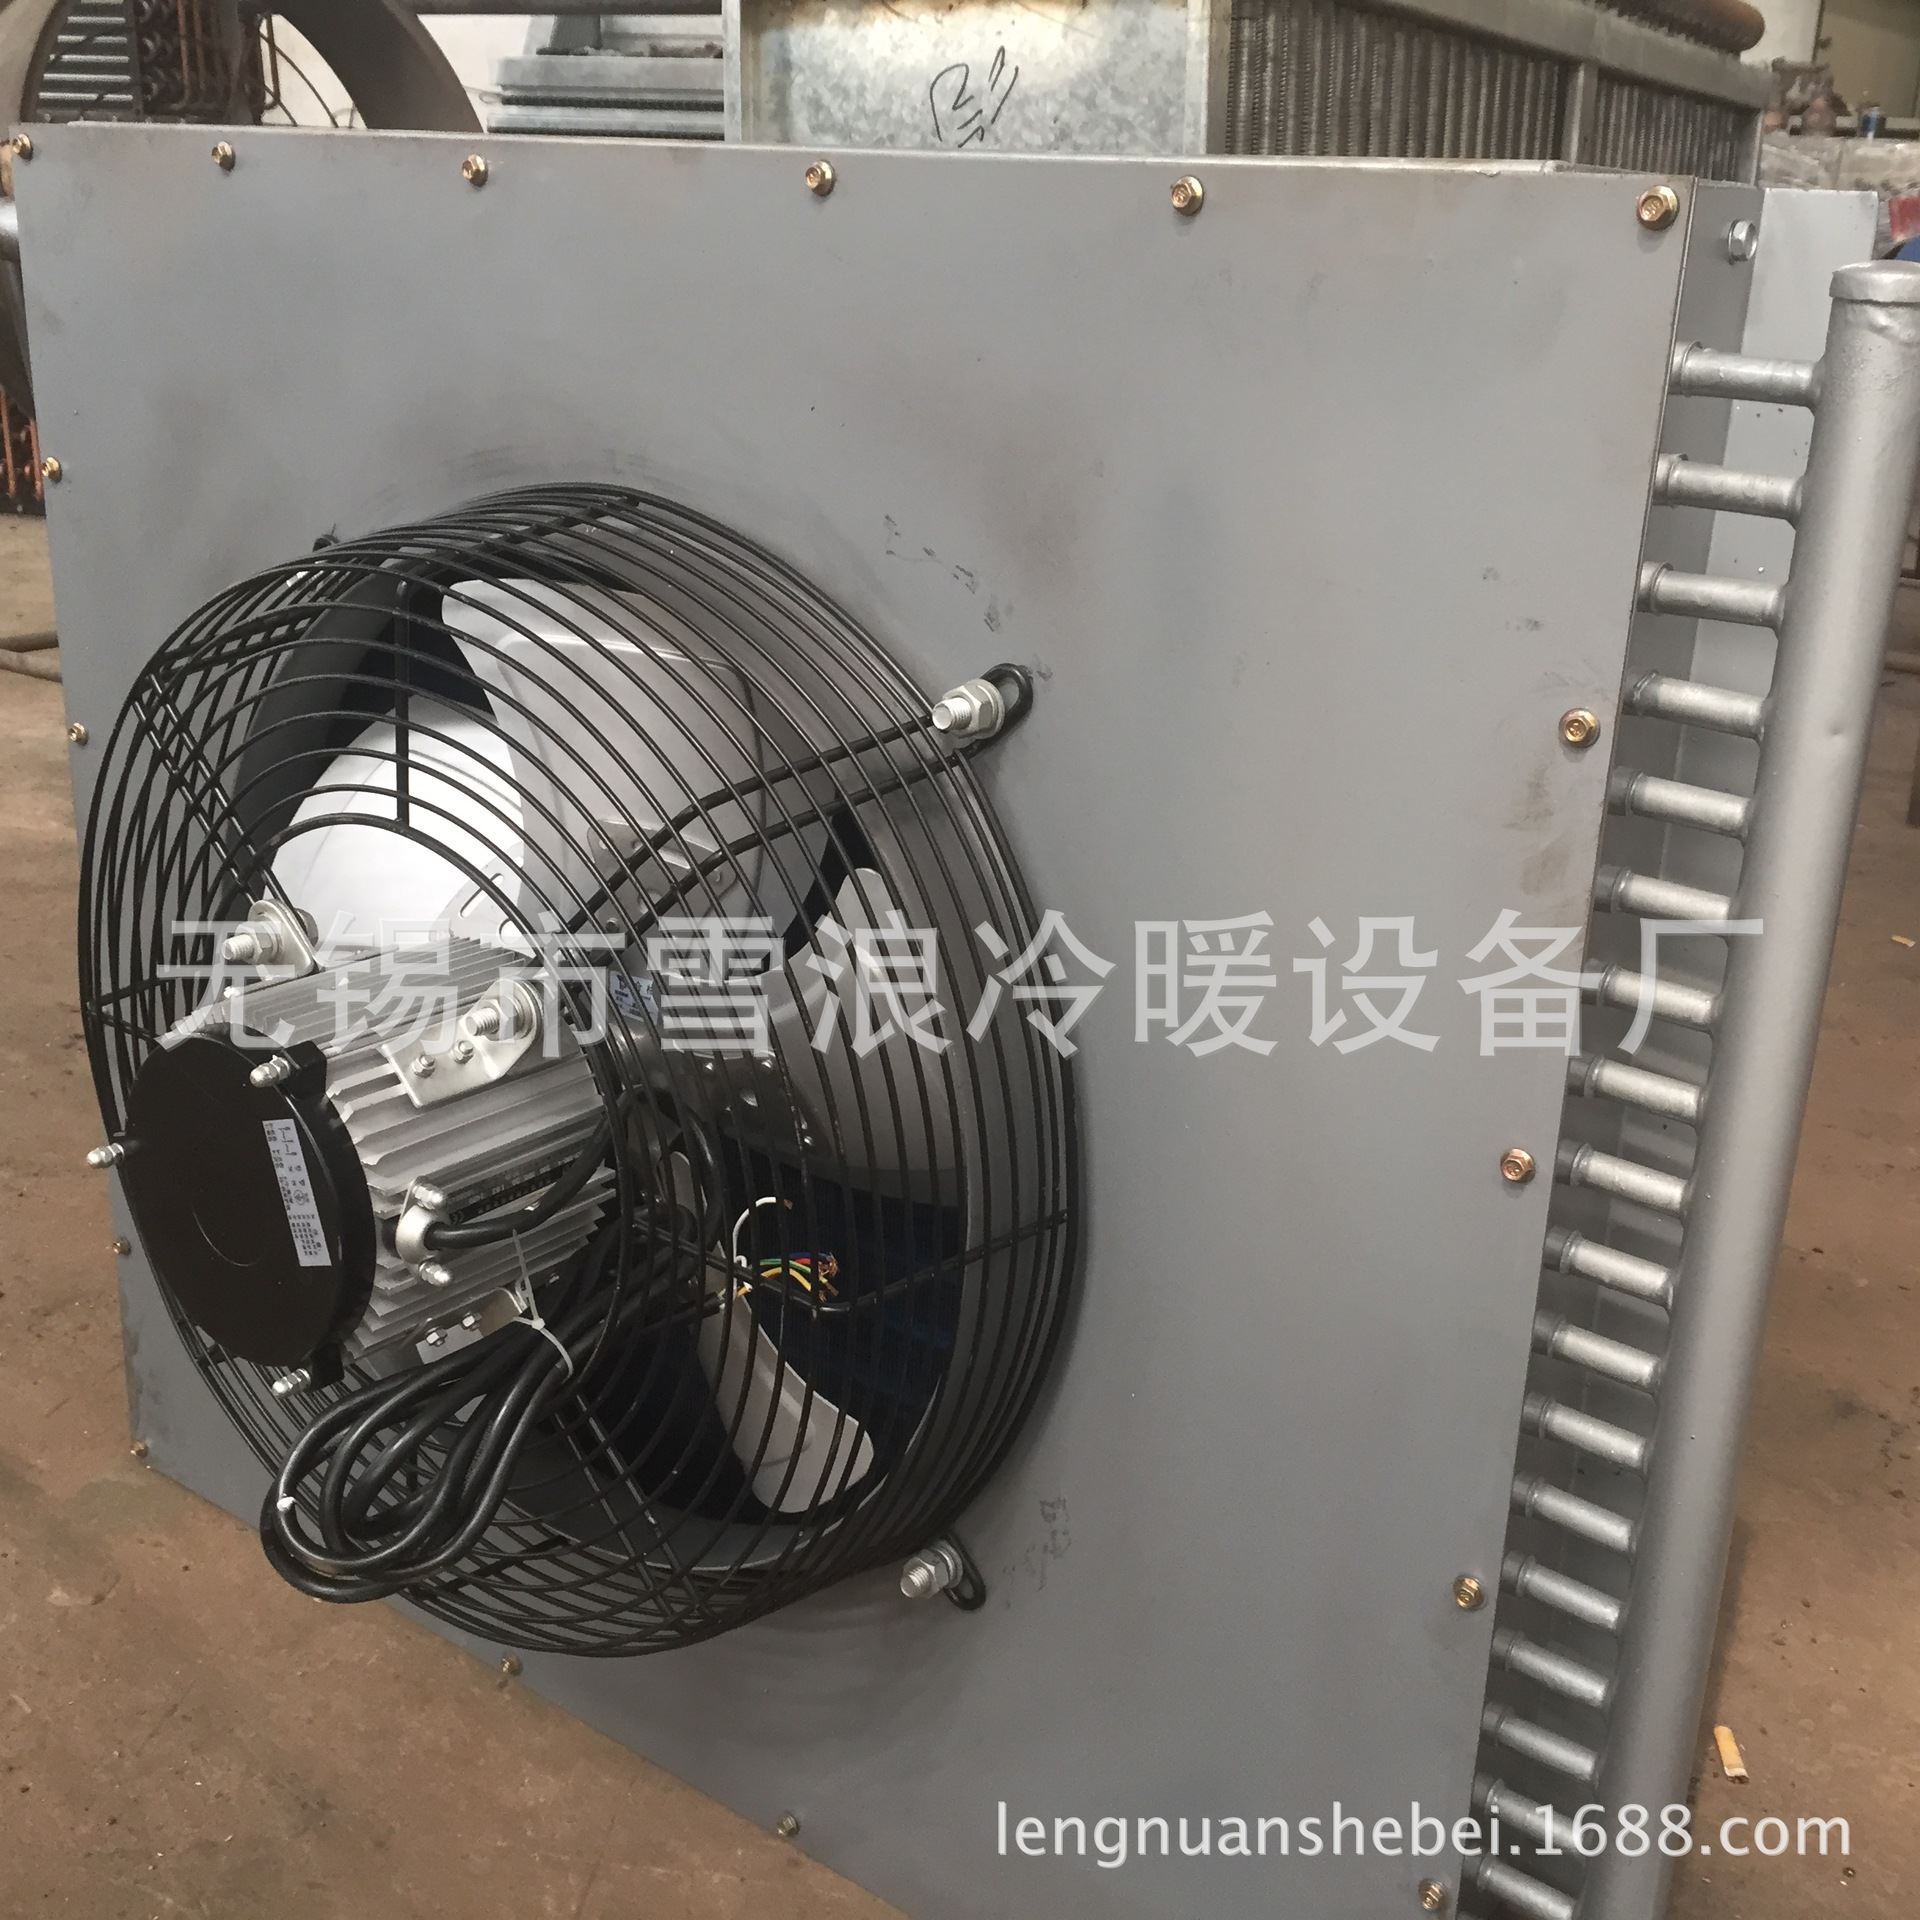 新小型工业风冷不锈钢空气冷凝器蒸发式空调冷却器厂家品